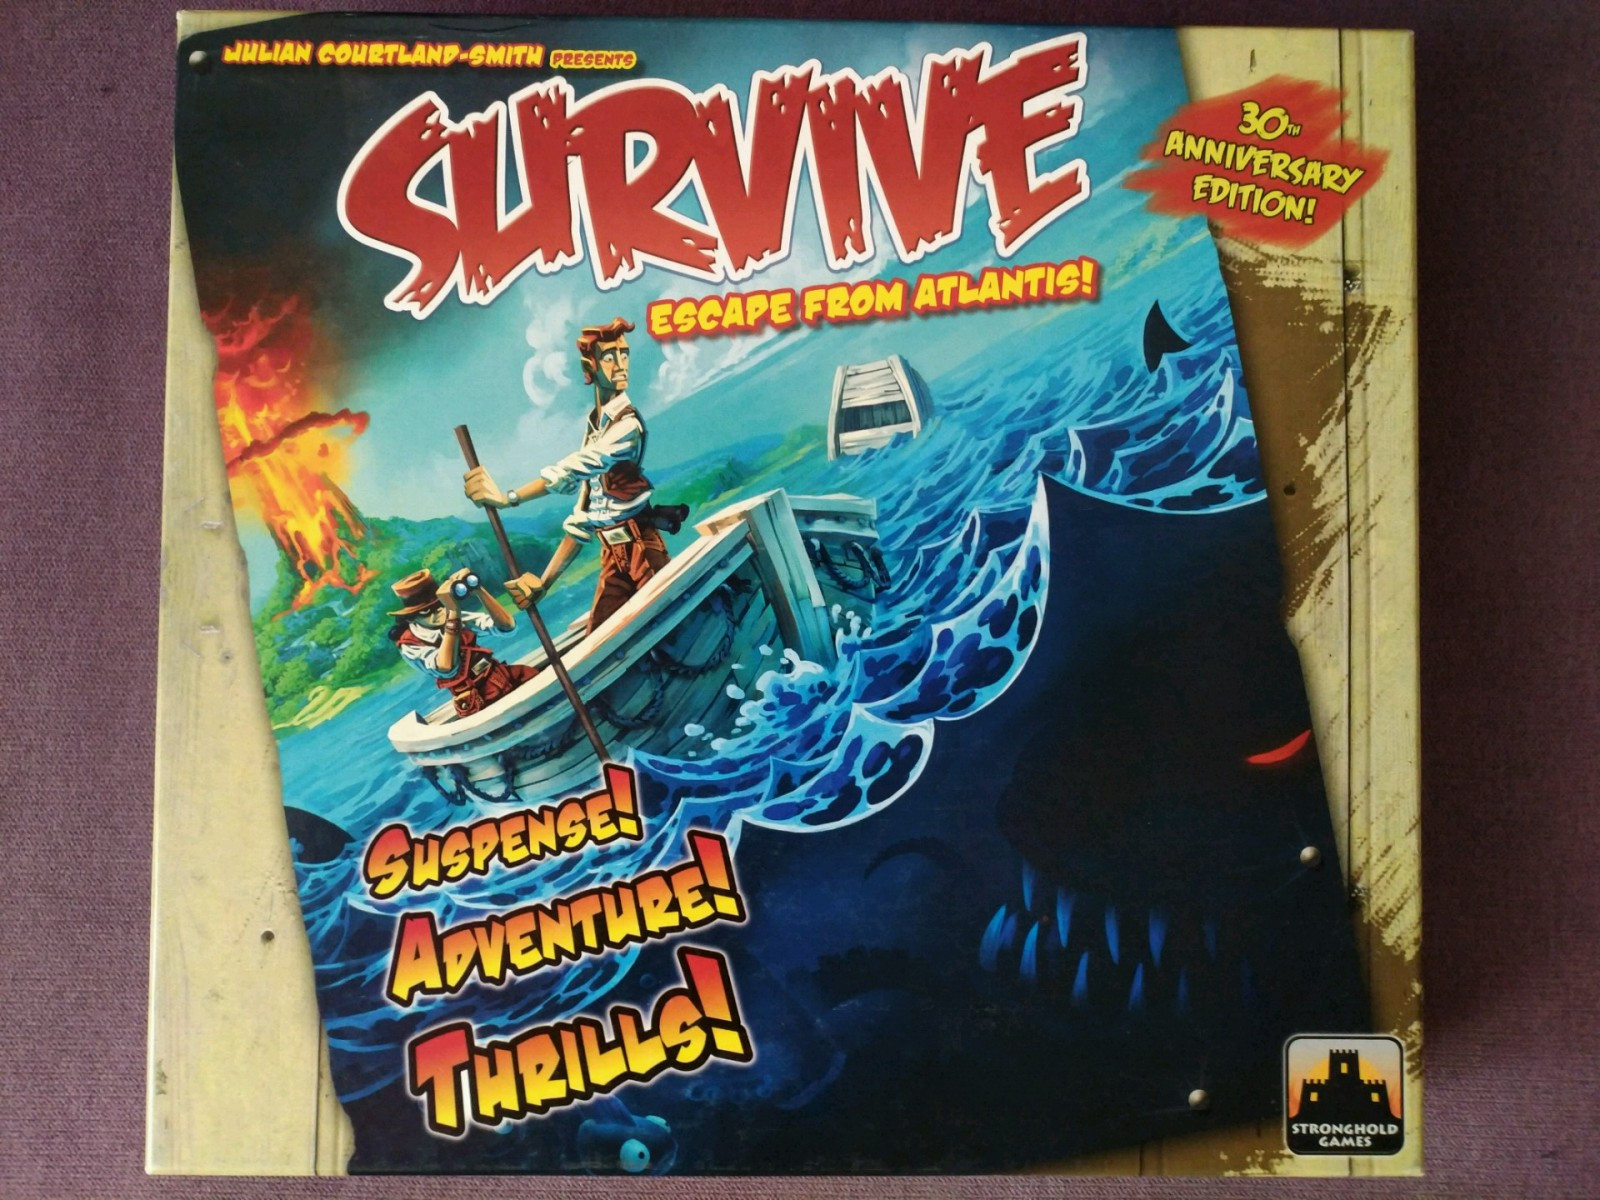 Survive Escape from Atlantis! 30th Anniversary Edition